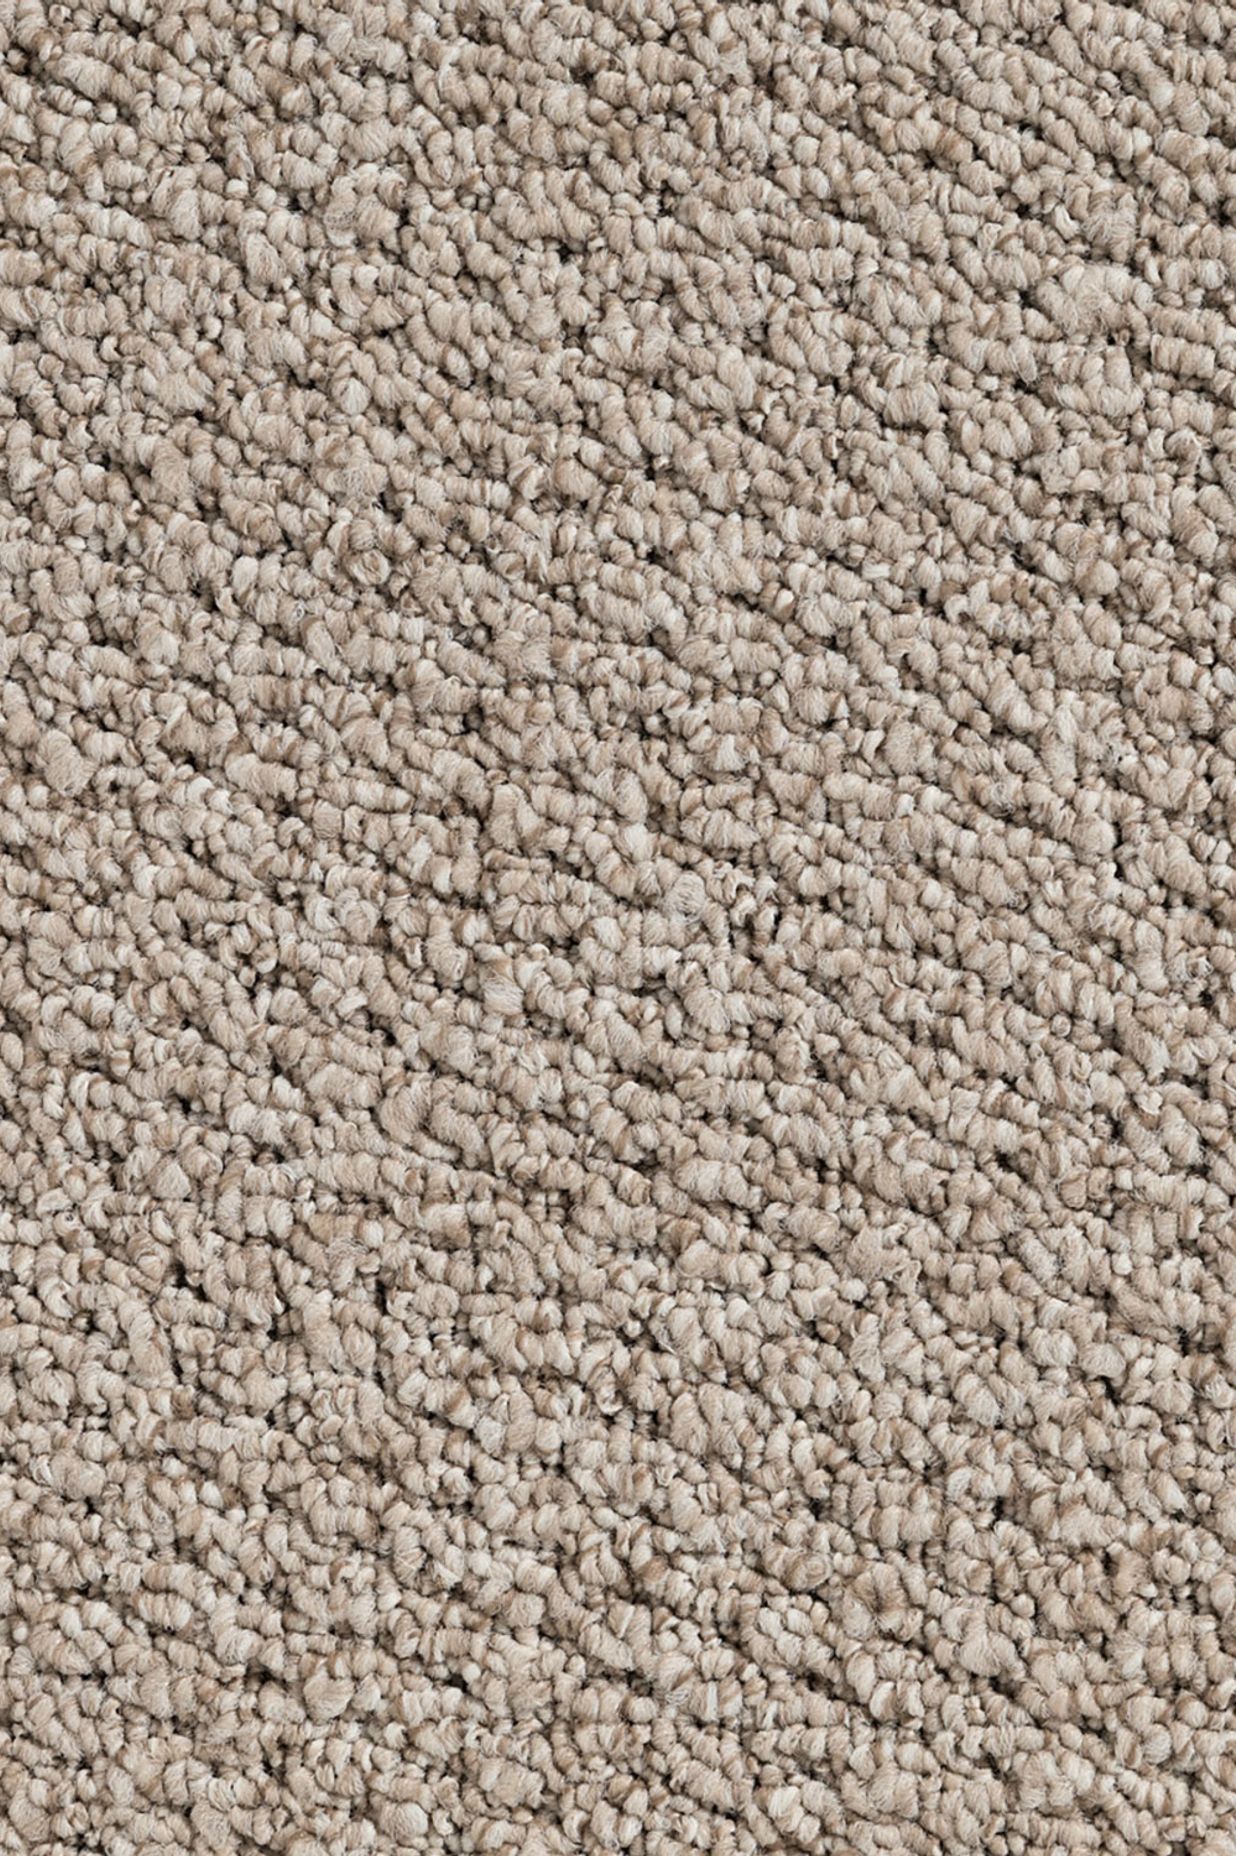 Broadwater polypropylene loop pile carpet by Andersons Floor Coverings